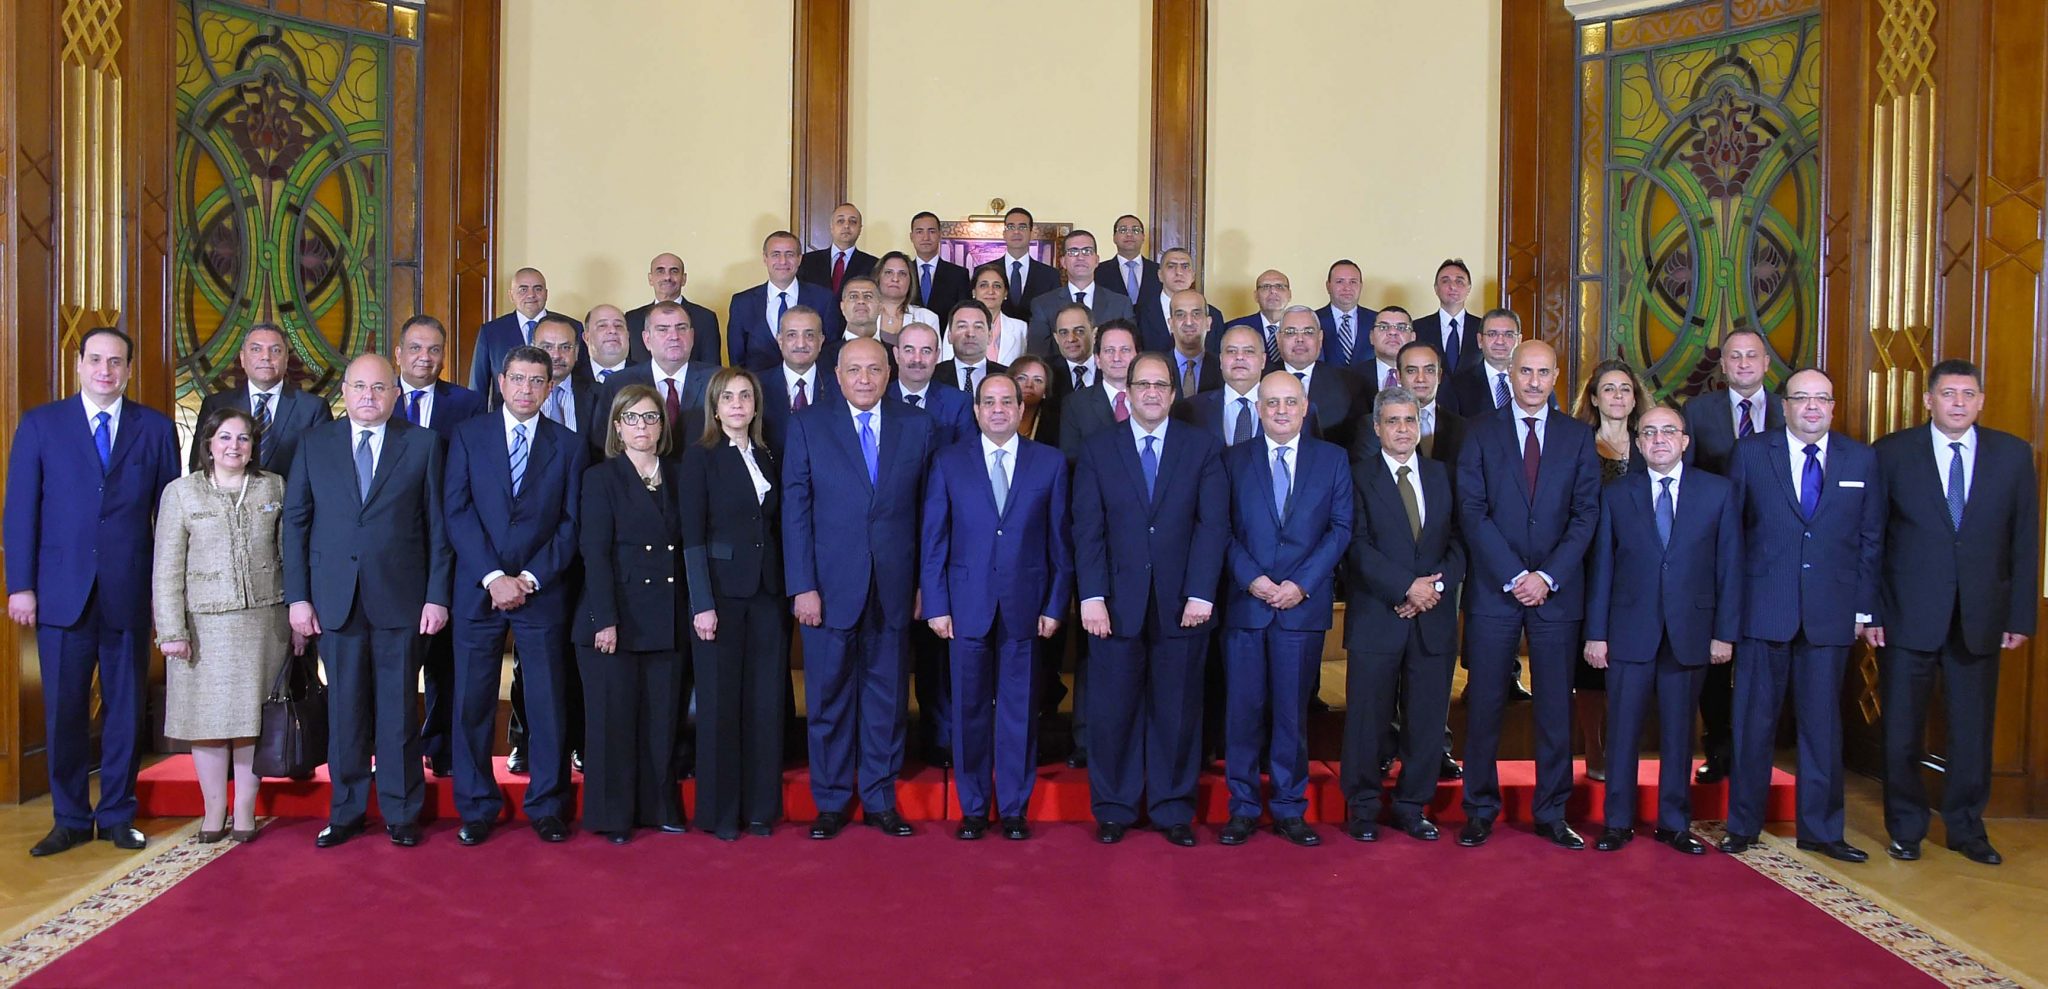   الرئيس يعقد اجتماعاً مع السفراء المرشحين للعمل كرؤساء لبعثات مصر الدبلوماسية في الخارج